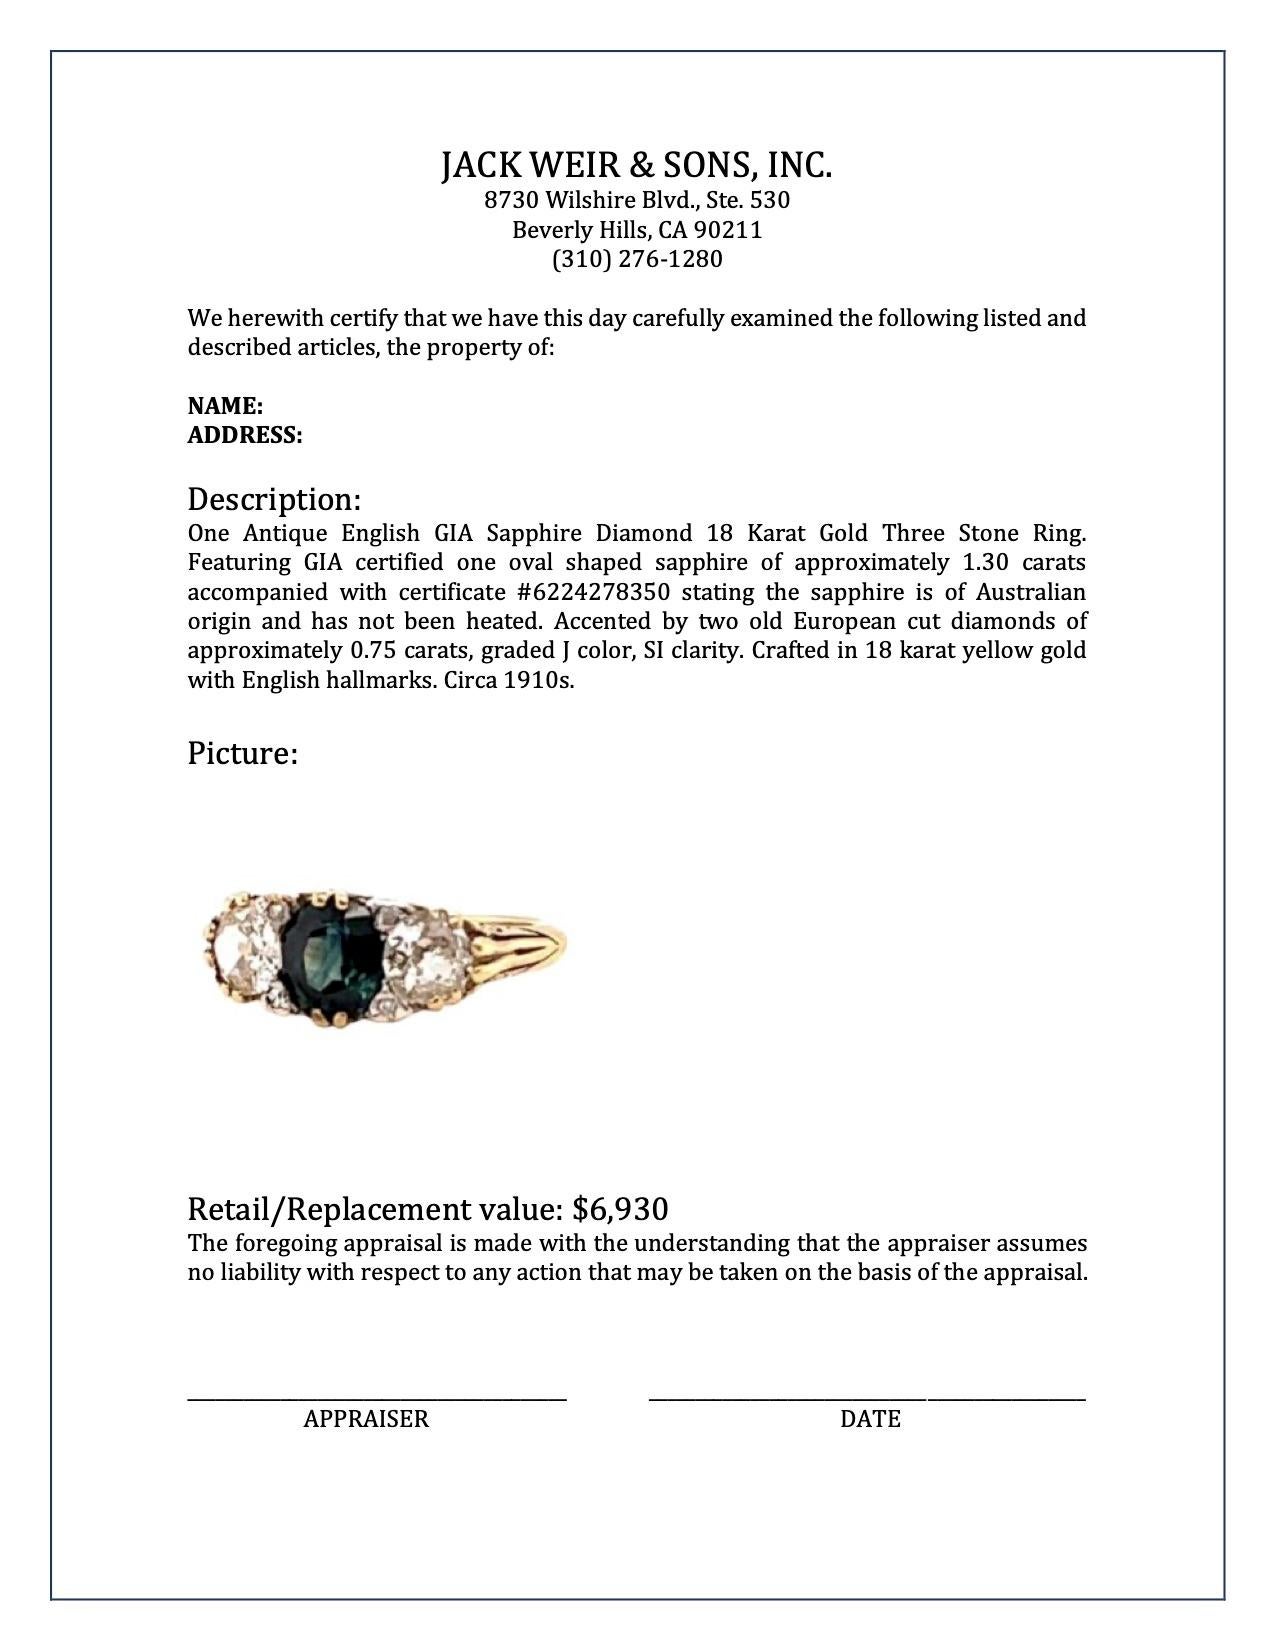 Antique English GIA Sapphire Diamond 18 Karat Gold Three Stone Ring 1